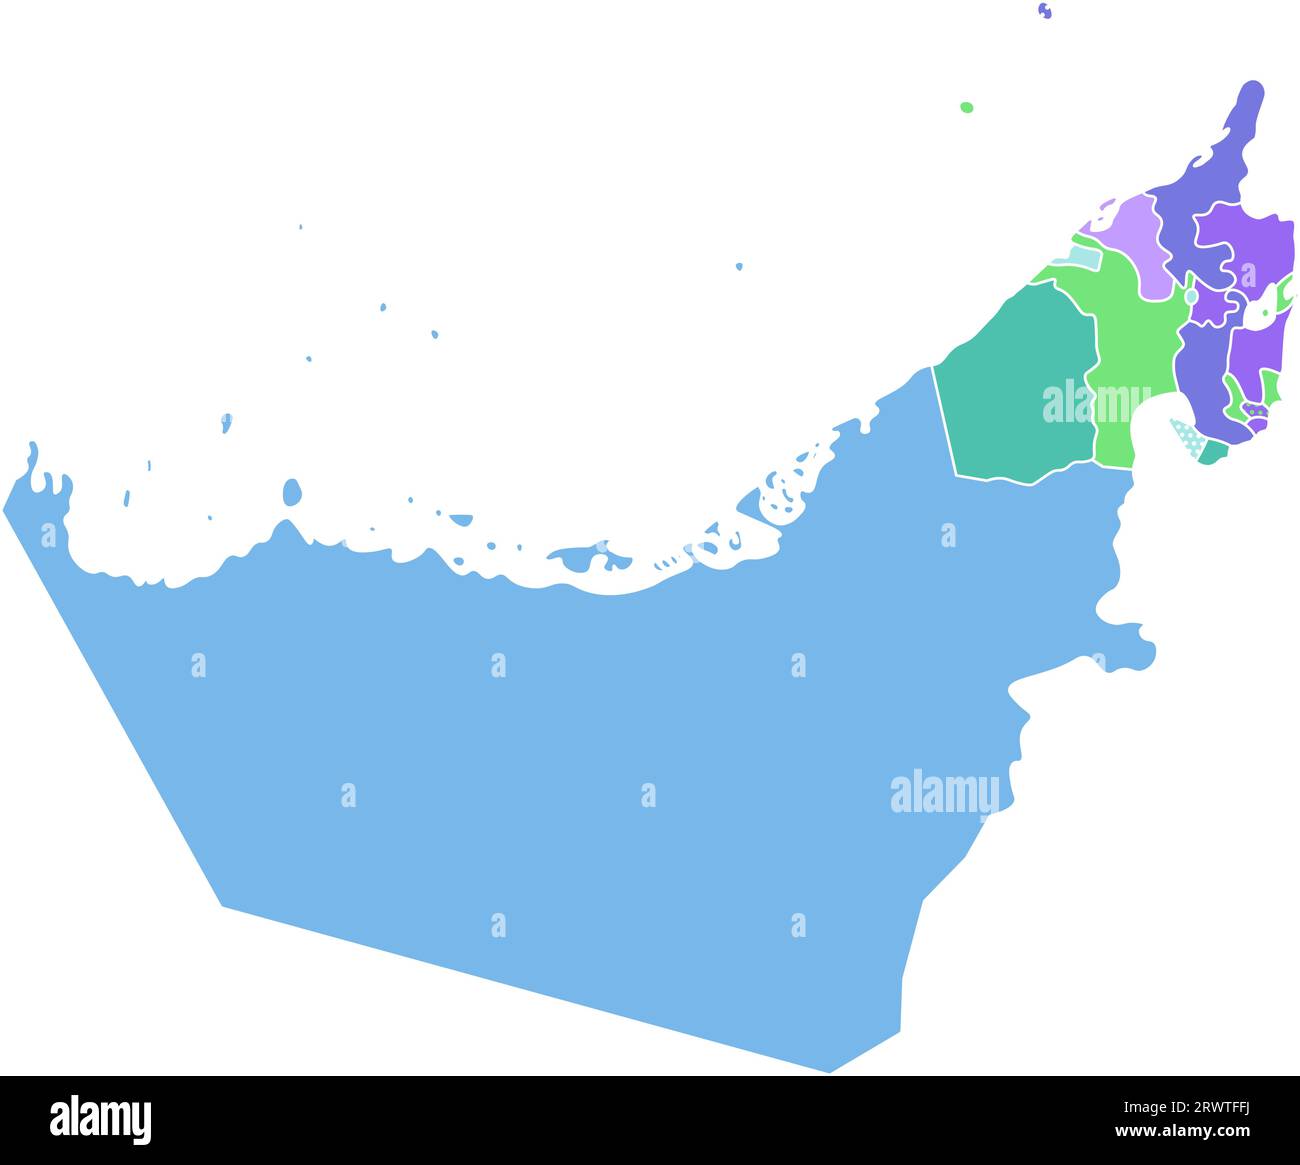 Vektor isolierte vereinfachte bunte Illustration mit Silhouette Festland der Vereinigten Arabischen Emirate (VAE) und emirate Grenzen. Weißer Hintergrund Stock Vektor